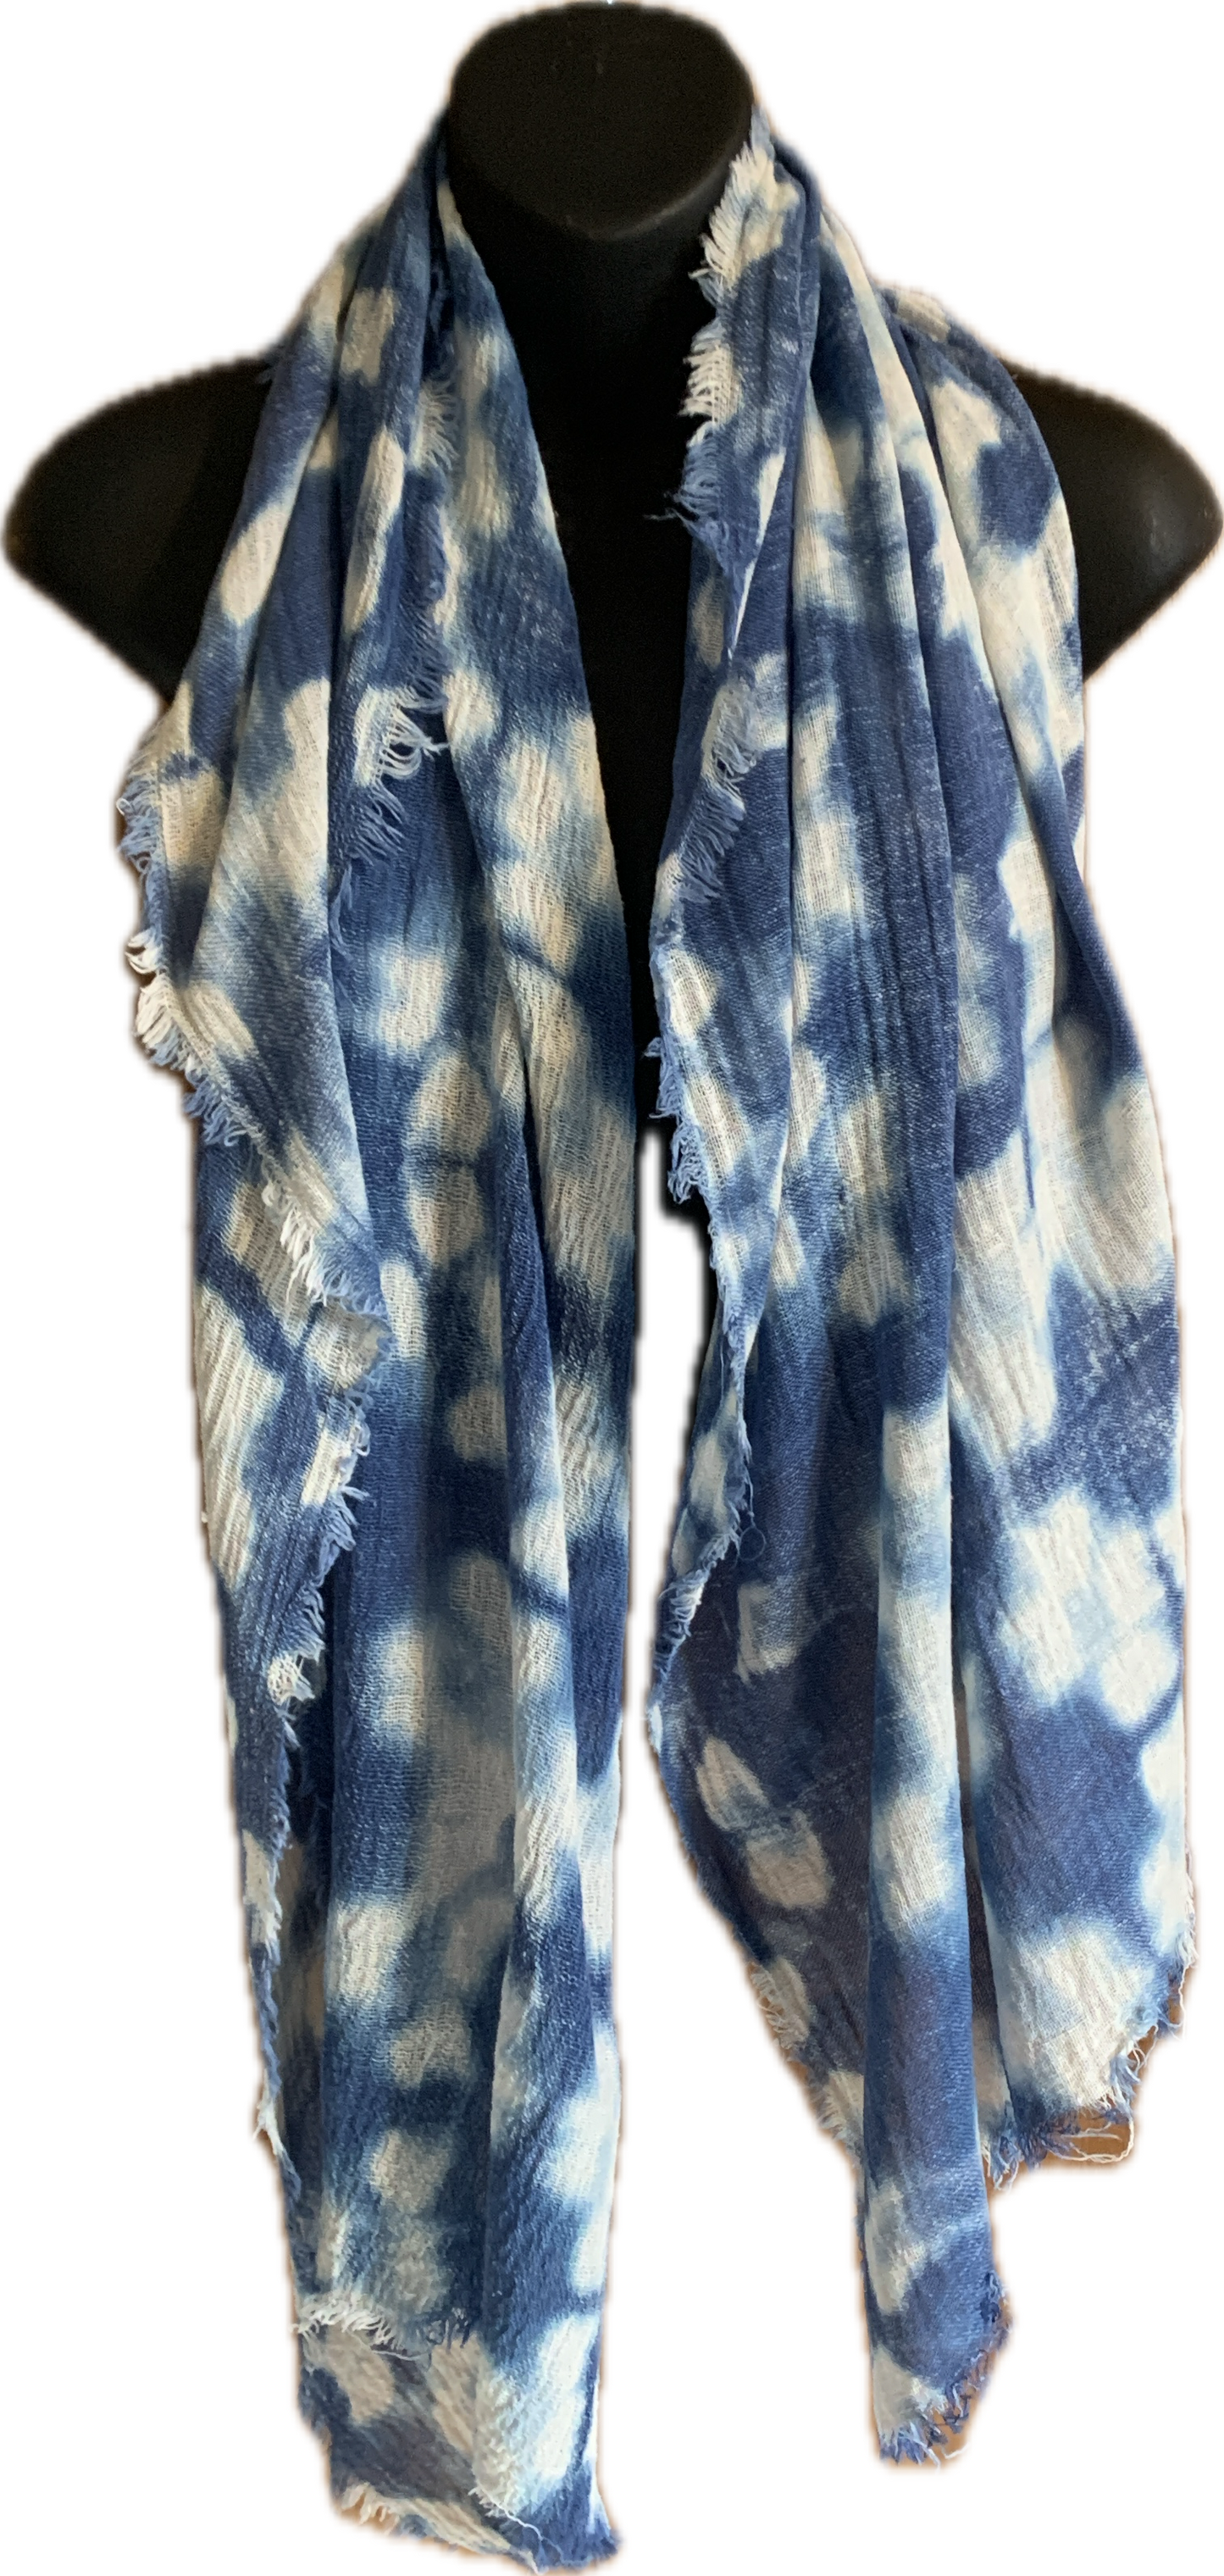 Indigo shibori cotton scarf